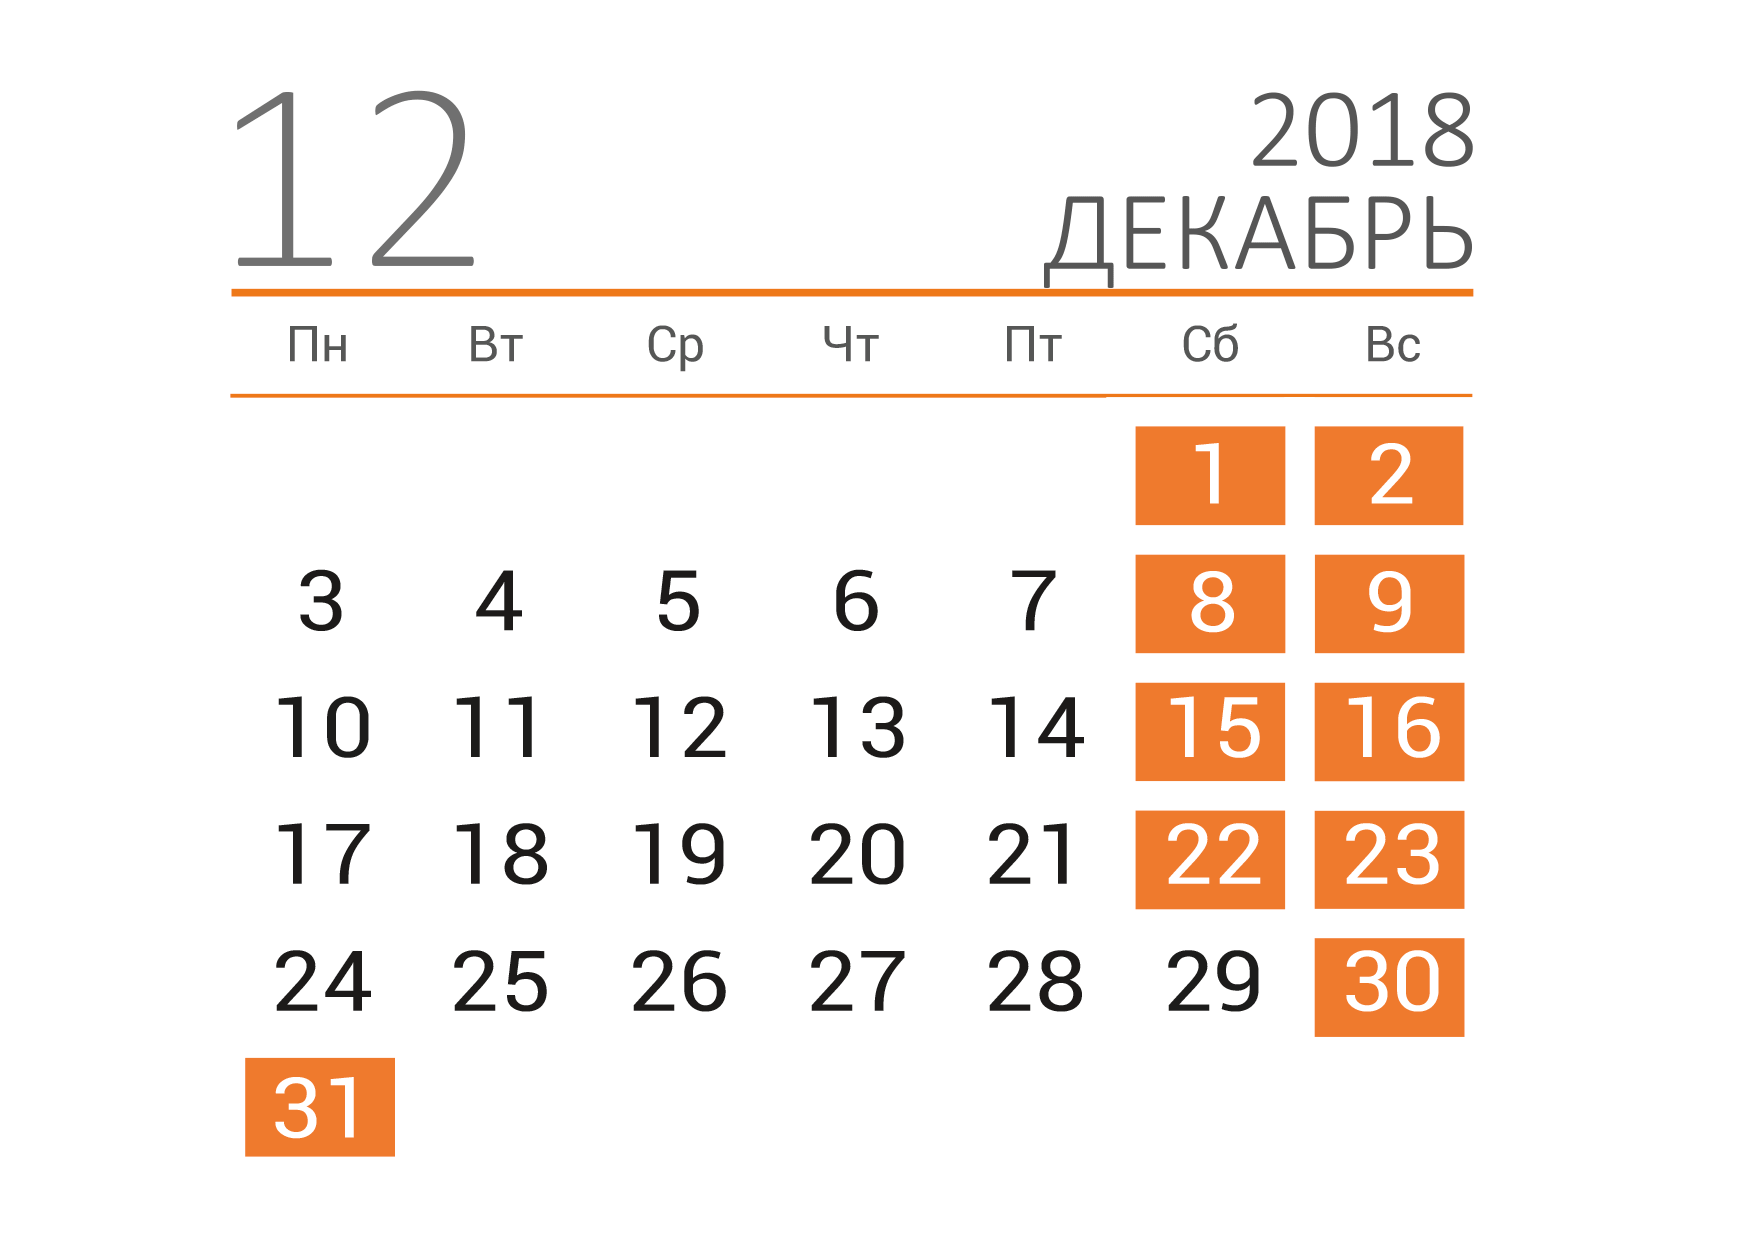 8 декабря 2018 год. Календарь декабрь. Декабрь 2018 года календарь. Календарь на декабрь месяц. Календарь декабрь 2018г.